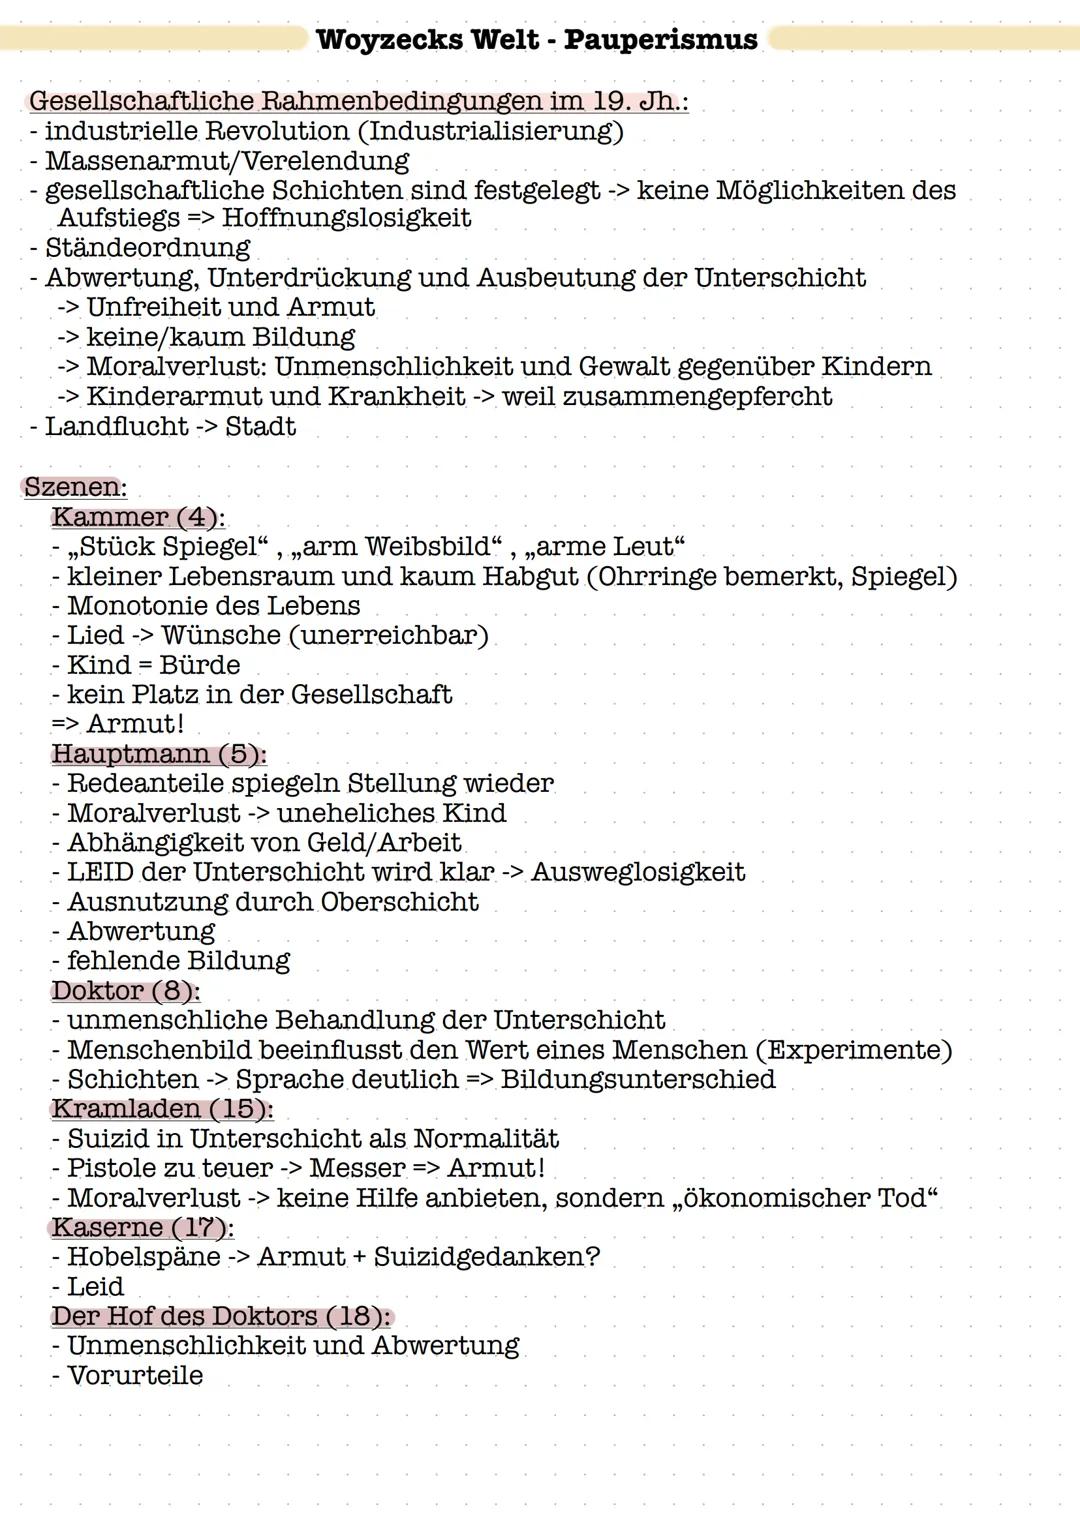 Daten zu Georg Büchner
17. 10. 1813 - Geburt als Sohn eines Arztes in Goddelau (Herzogt. Hessen)
1822-1825 - Besuch der Erziehungs- und Unte